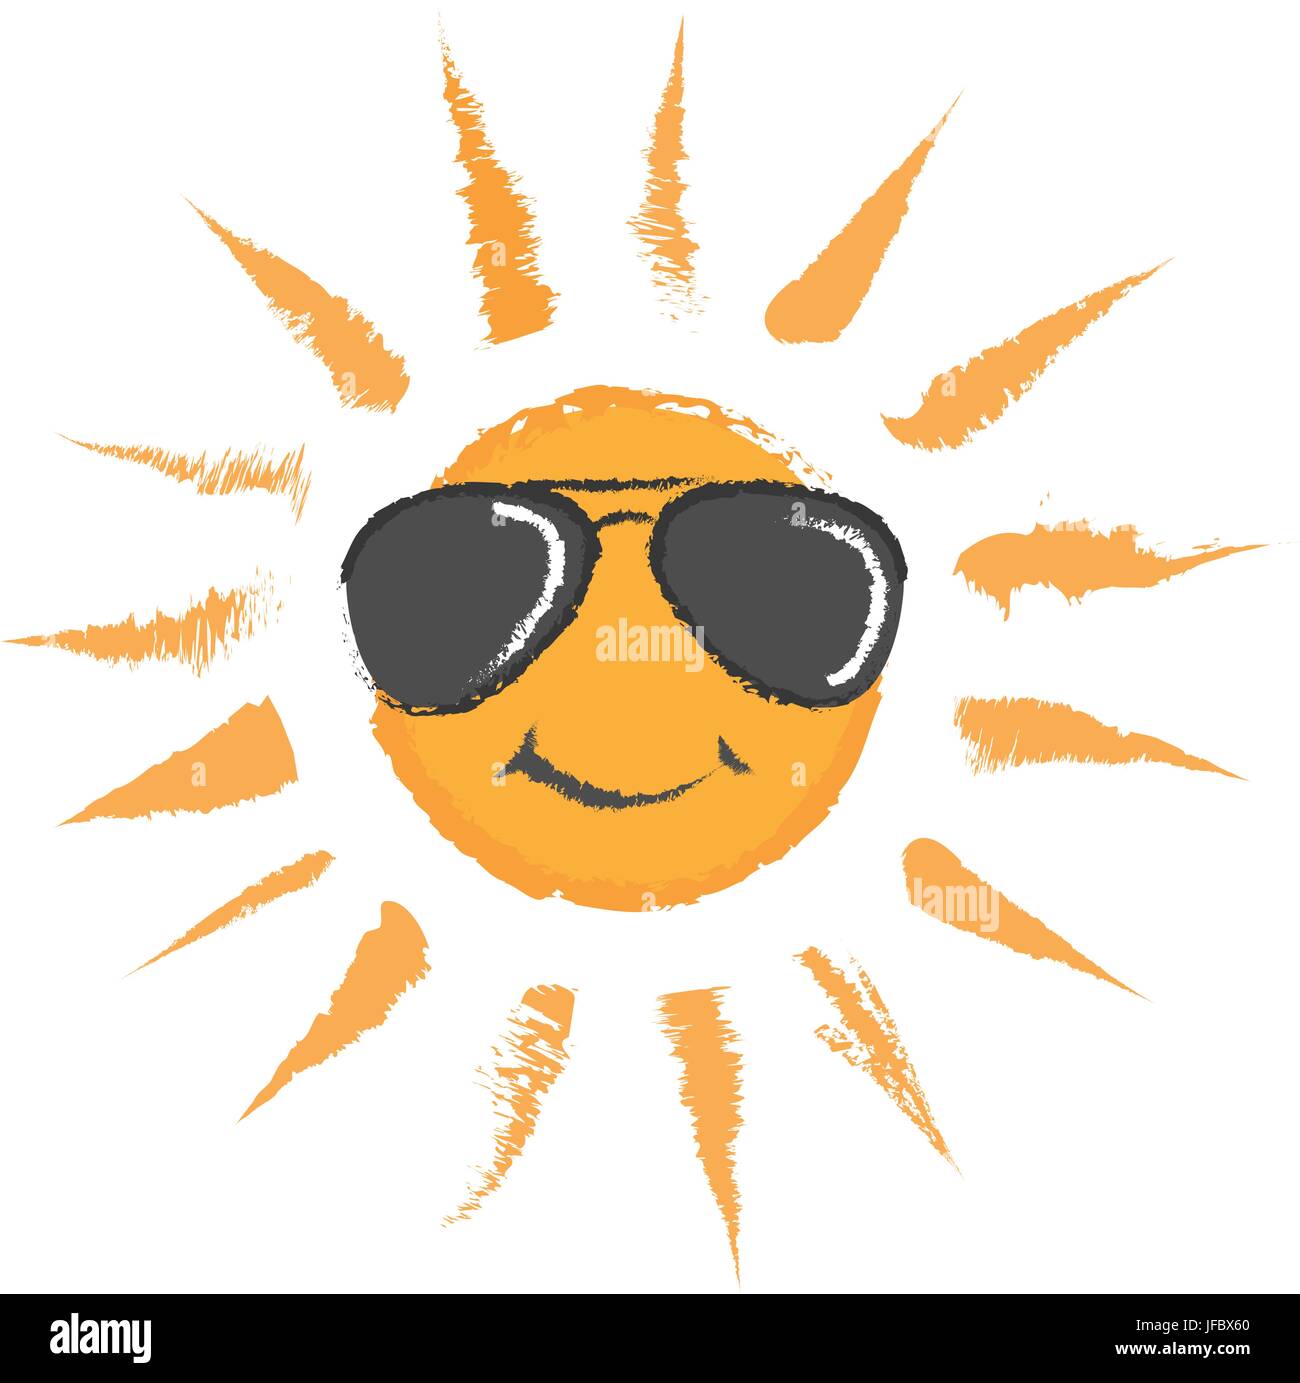 isoliert, Sommer, sommerlich, Illustration, Cartoon, Vektor, Sonnenbrille, Stock Vektor